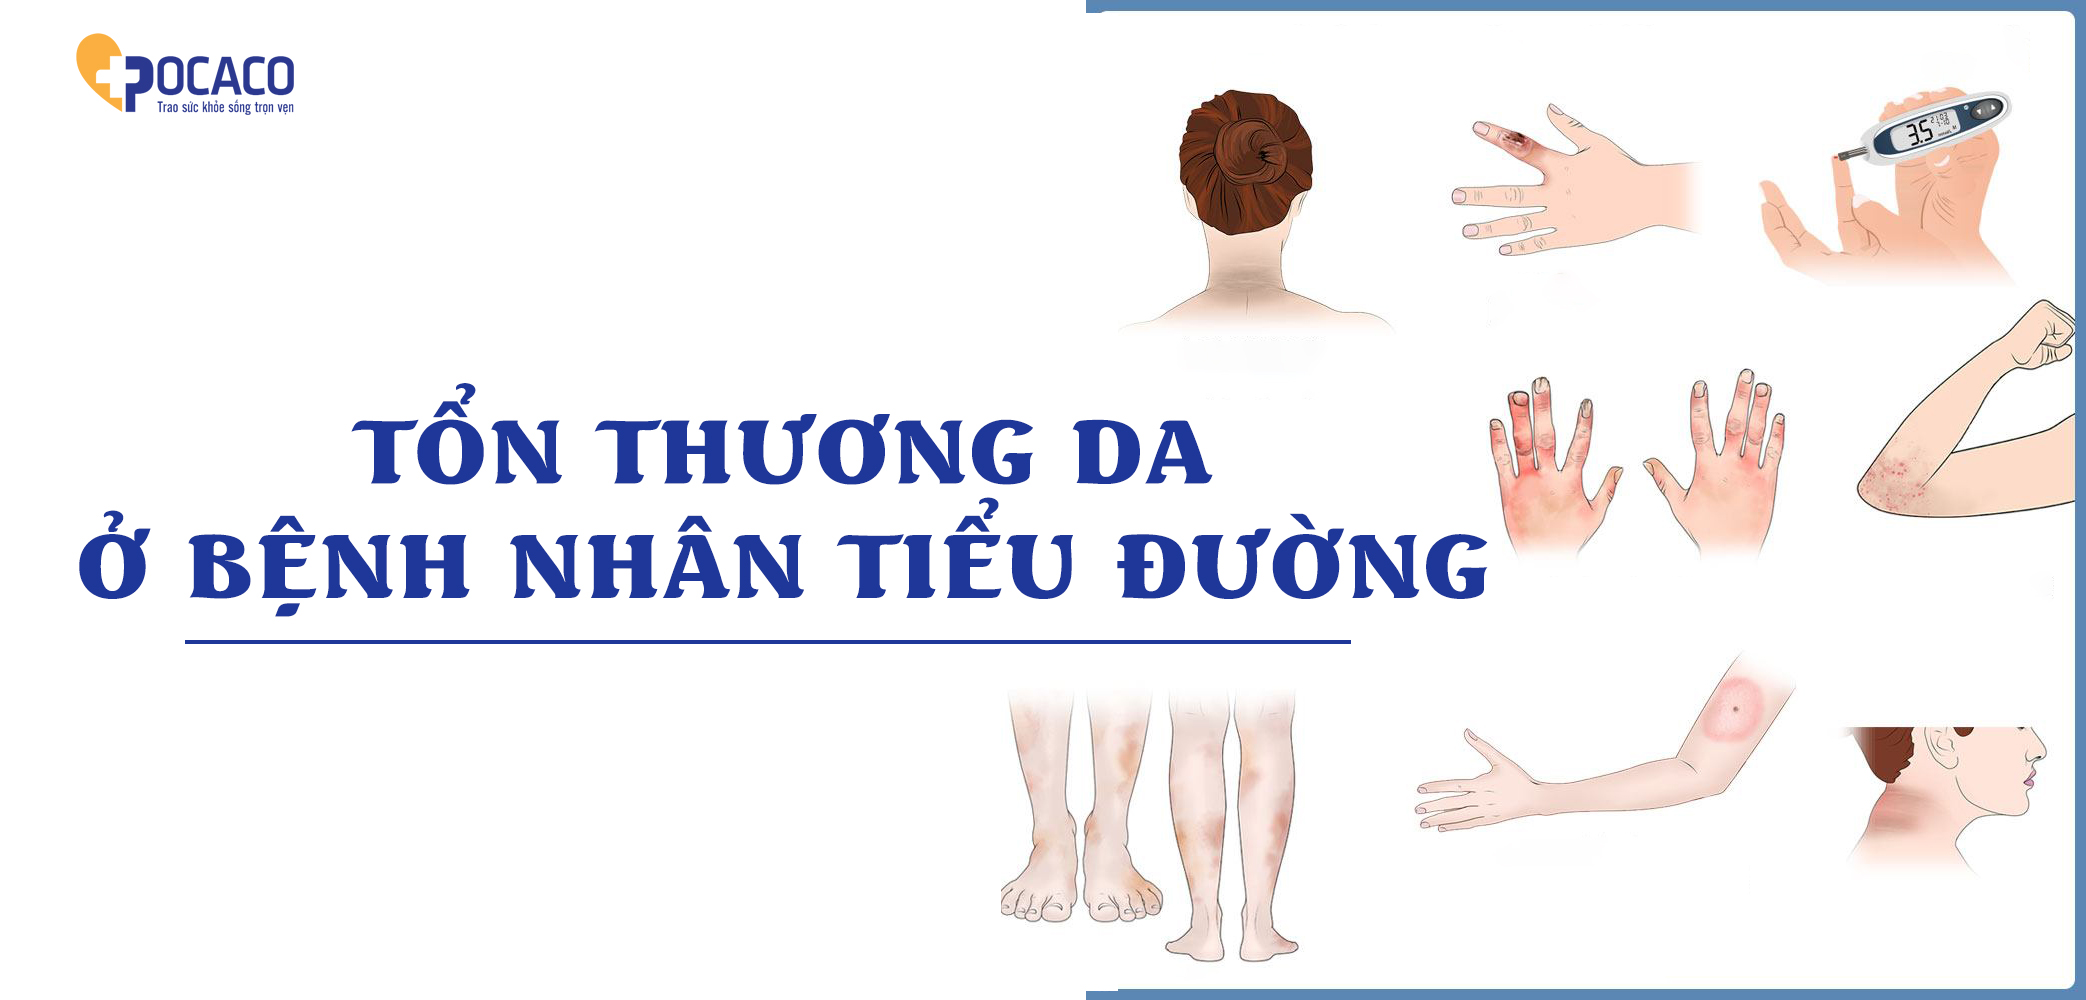 ton-thuong-da-o-benh-nhan-tieu-duong-1